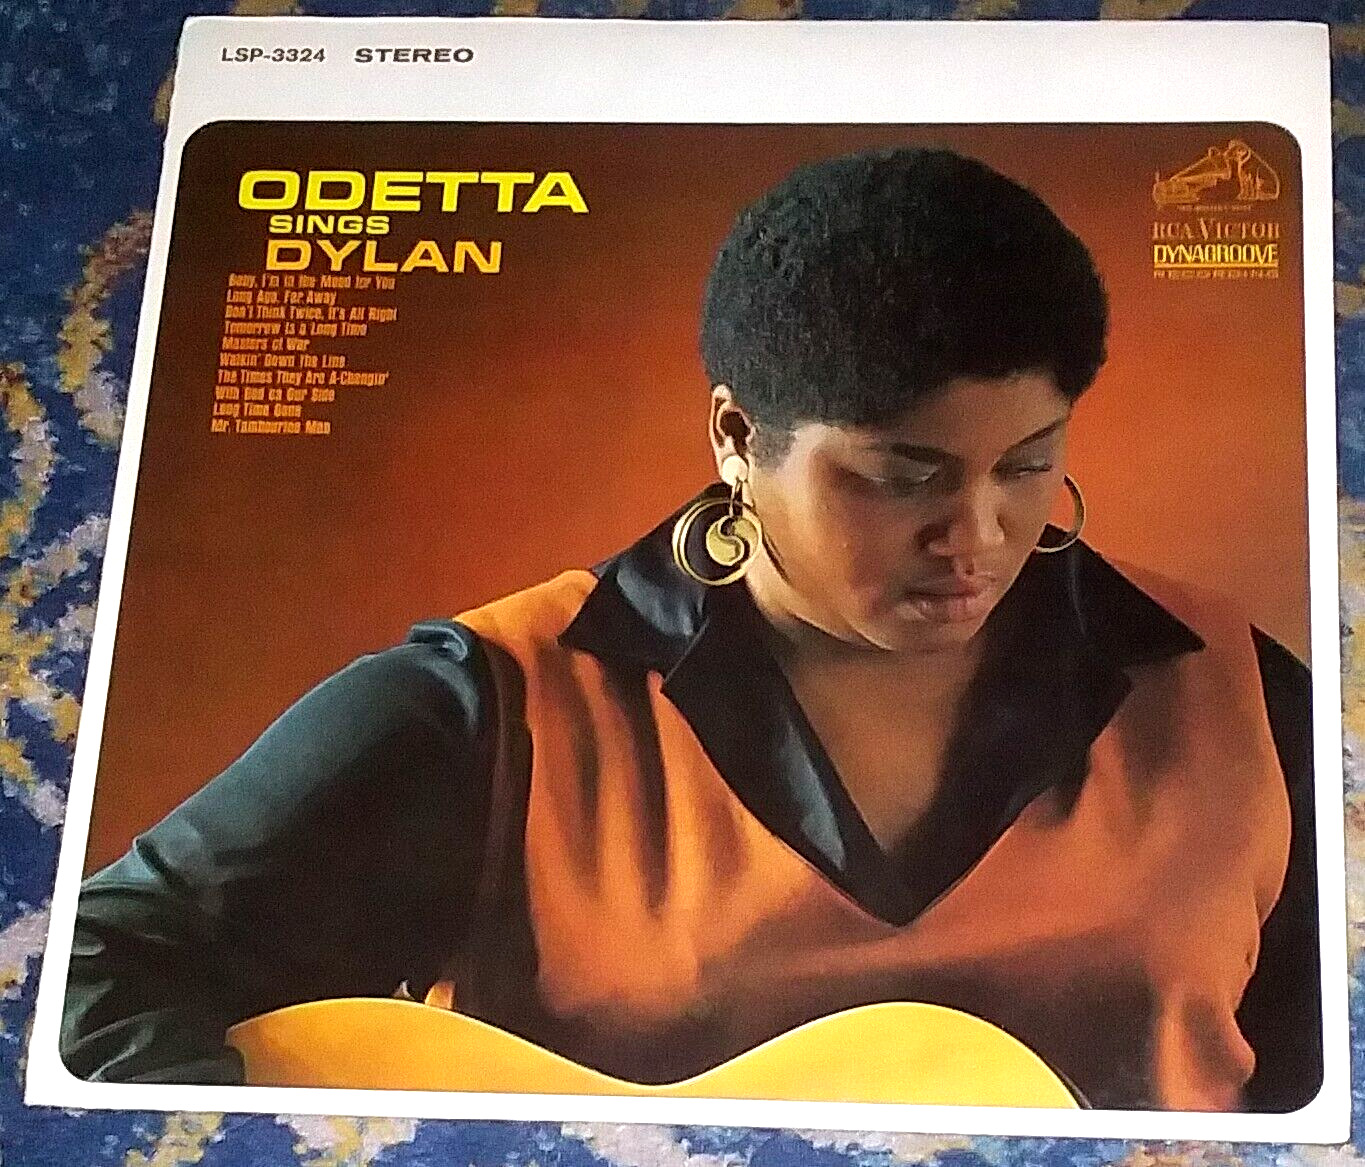 ODETTA SINGS DYLAN / ODETTA 1965 RCA LP LSP-3324